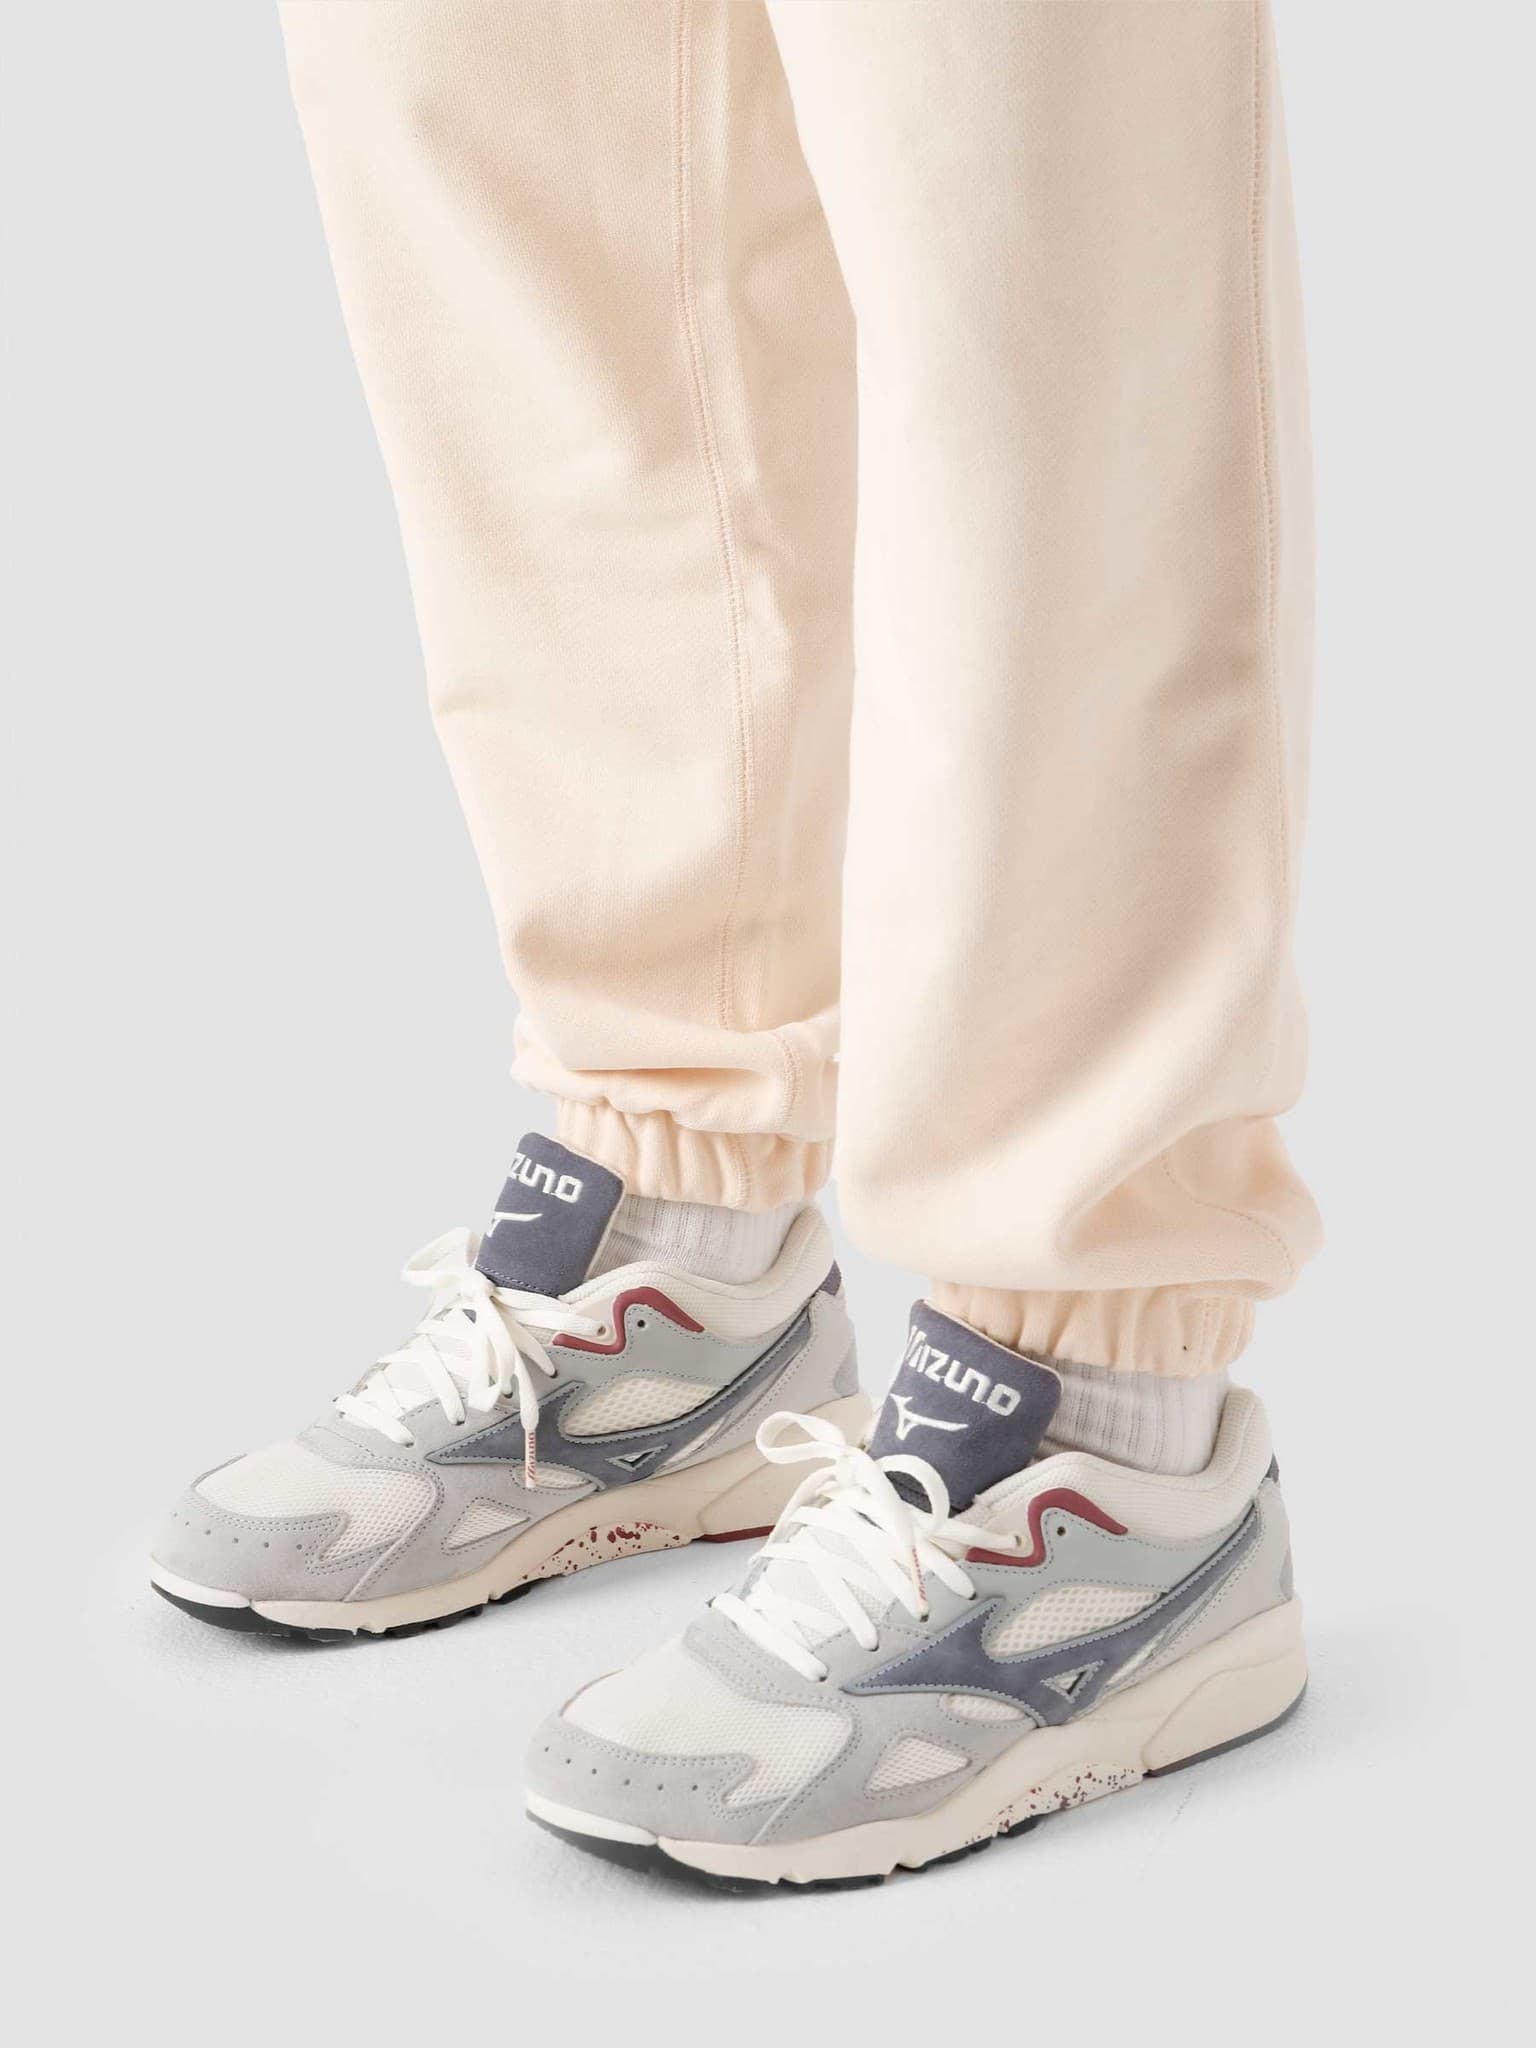 adidas Pw Basics Pant Ecru Tint - Freshcotton